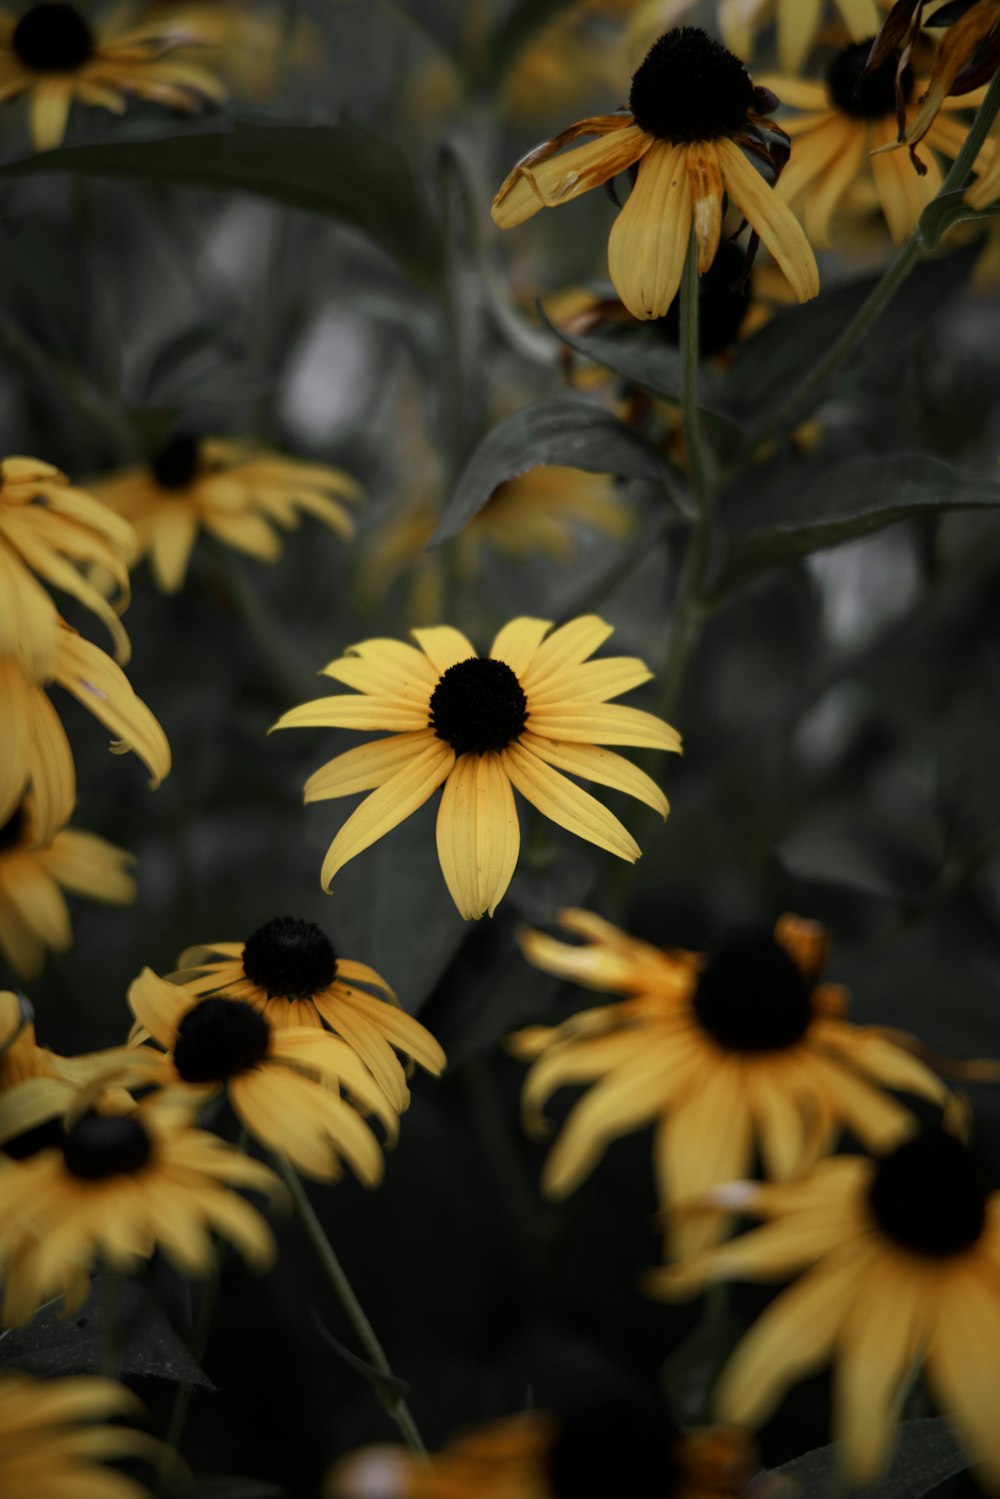 girasole giallo e nero nella fotografia ravvicinata